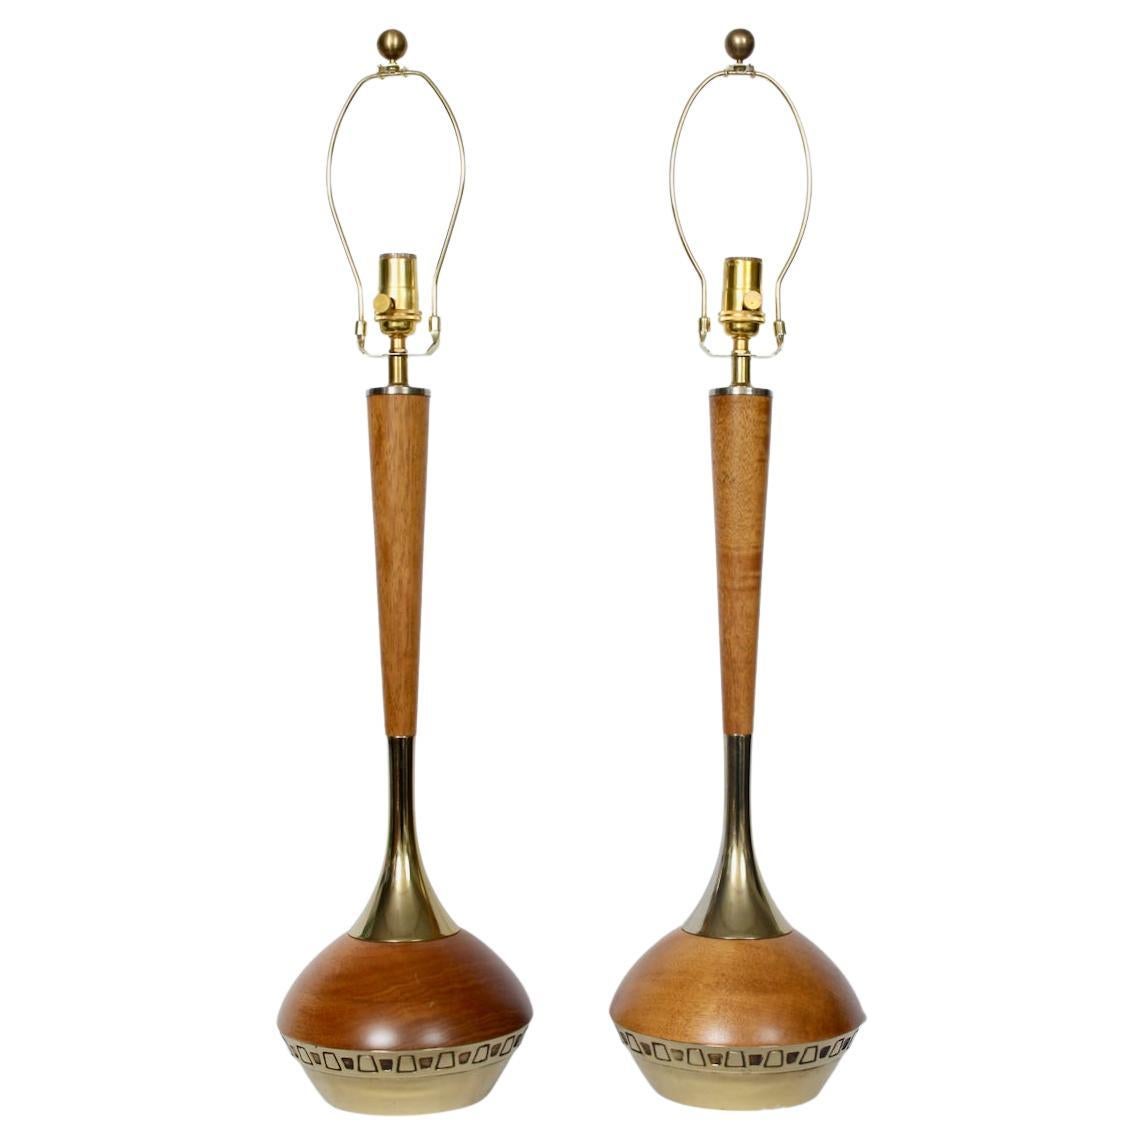 Pair Laurel Lamp Co. American Danish Teak Teardrop Table Lamps, 1950's ...